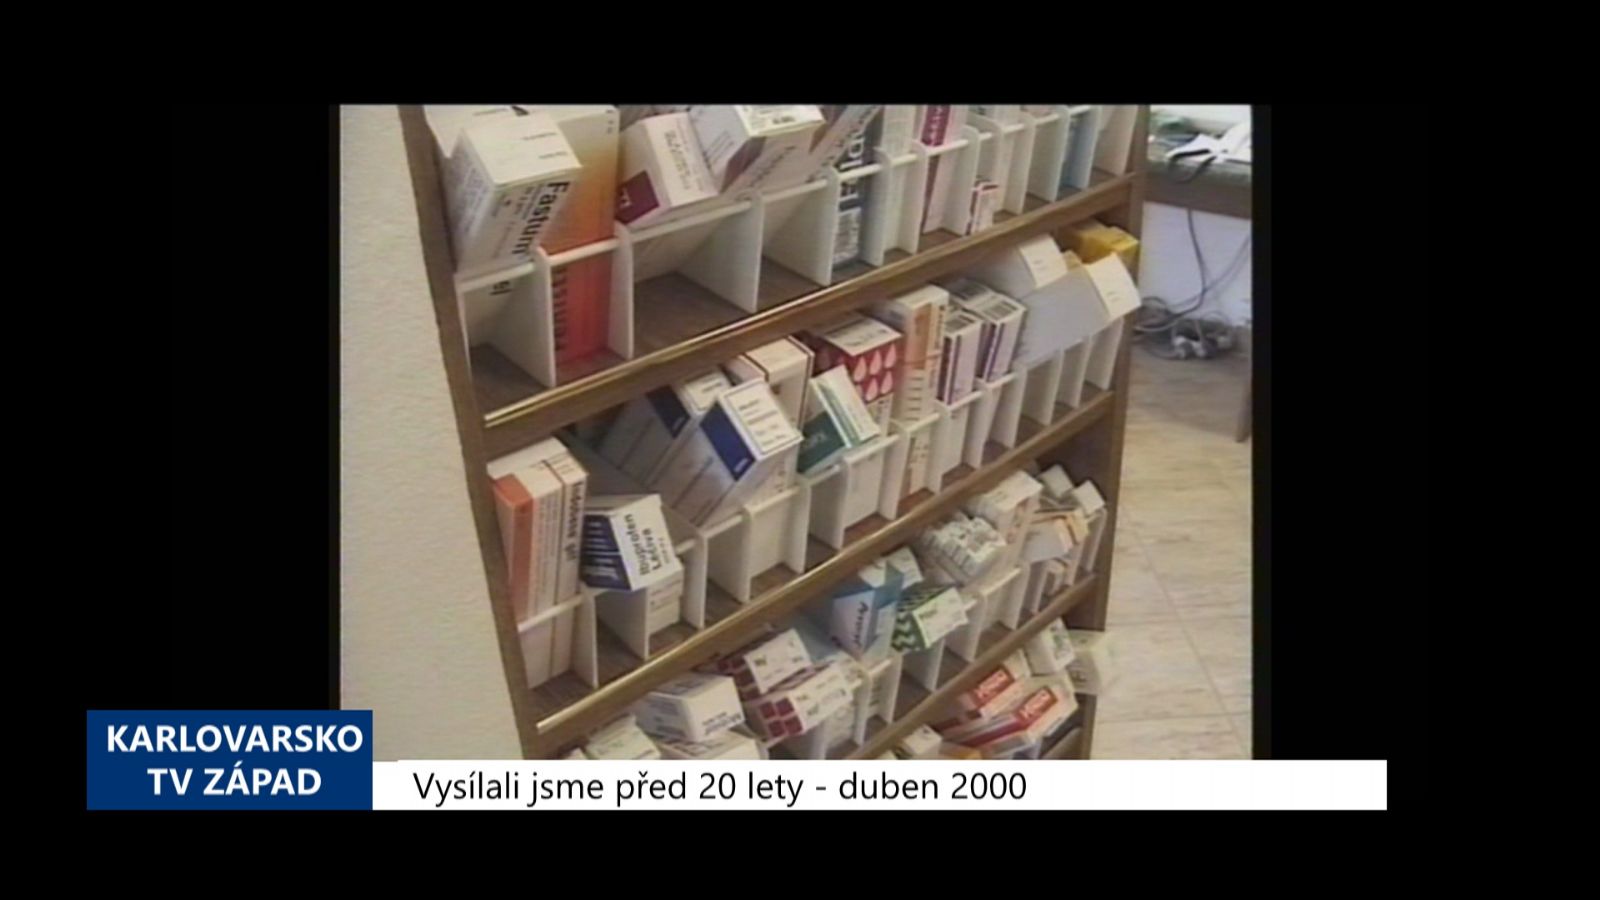 2000 – Cheb: Ve městě byla obnovena lékárenská pohotovost (TV Západ)